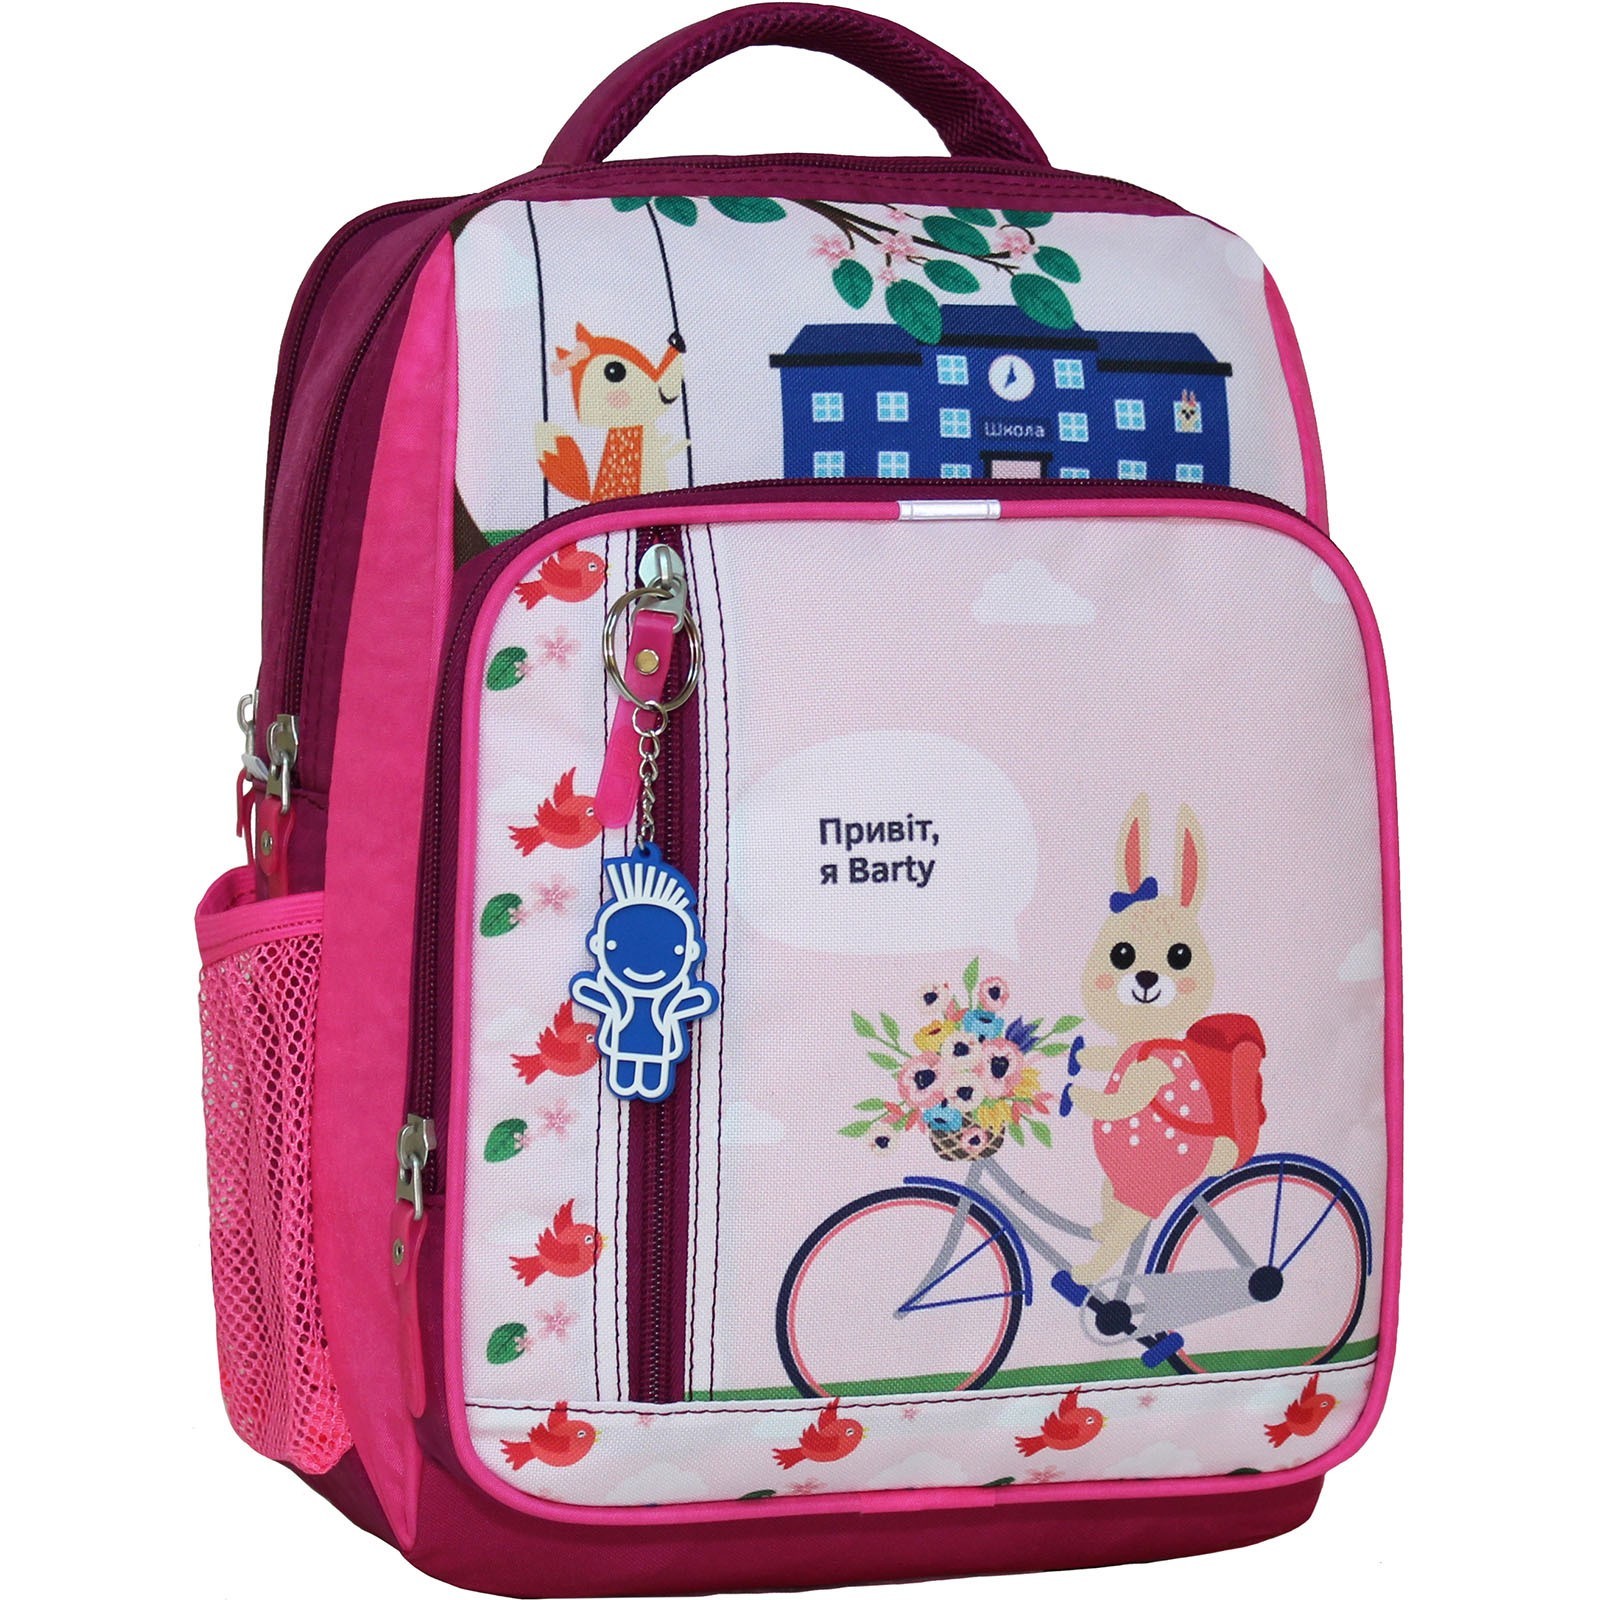 

Школьный рюкзак с ортопедической мягкой спинкой портфель для девочки 8 л. 33 x 24 x 11 см BL430(0012870)